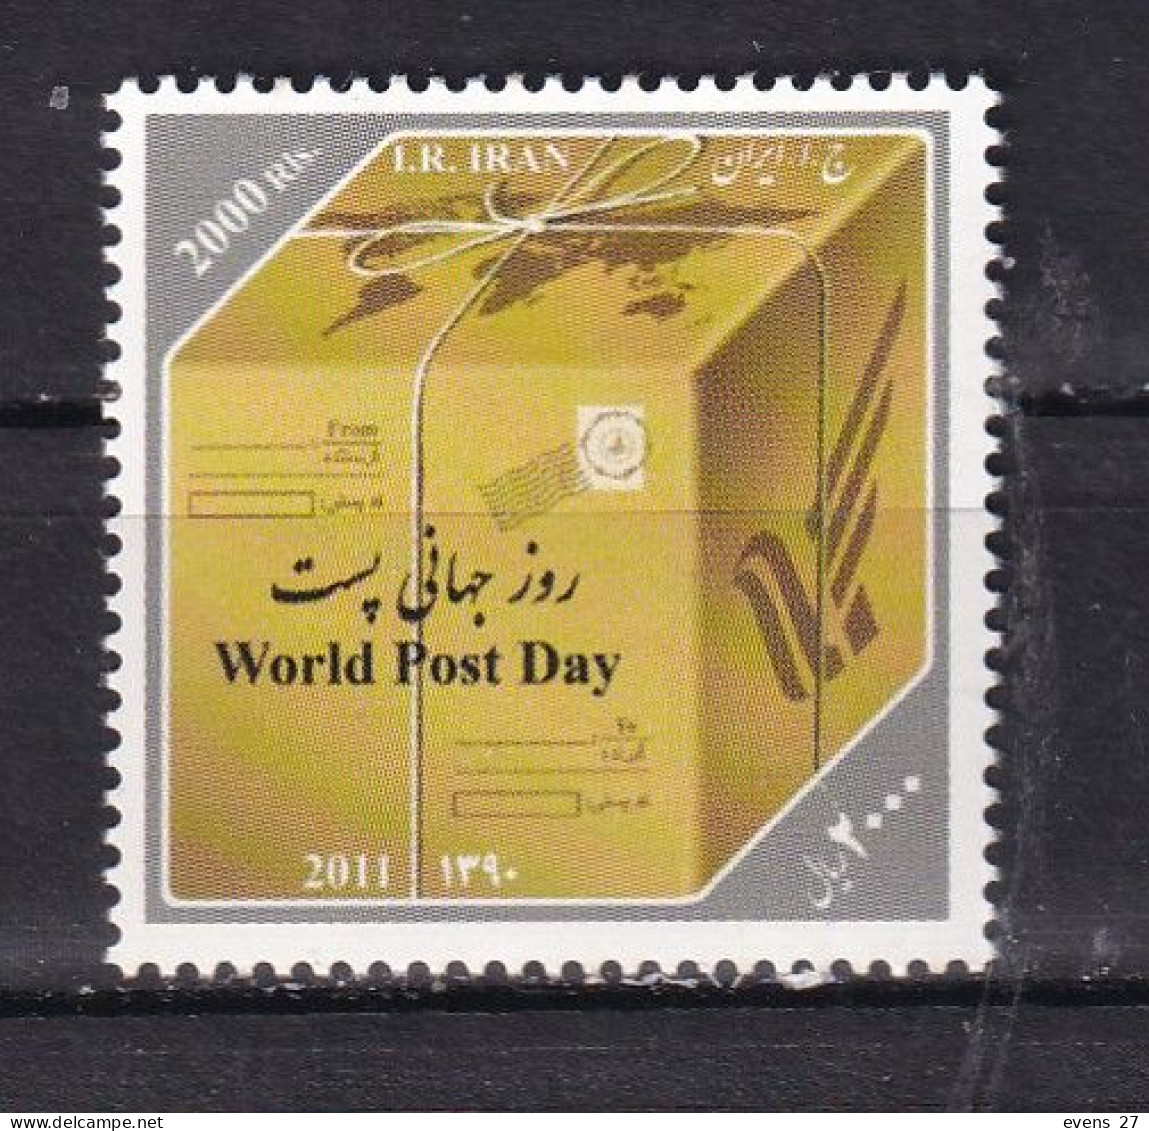 IRAN-2012-WORLD POST DAY- MNH. - Iran